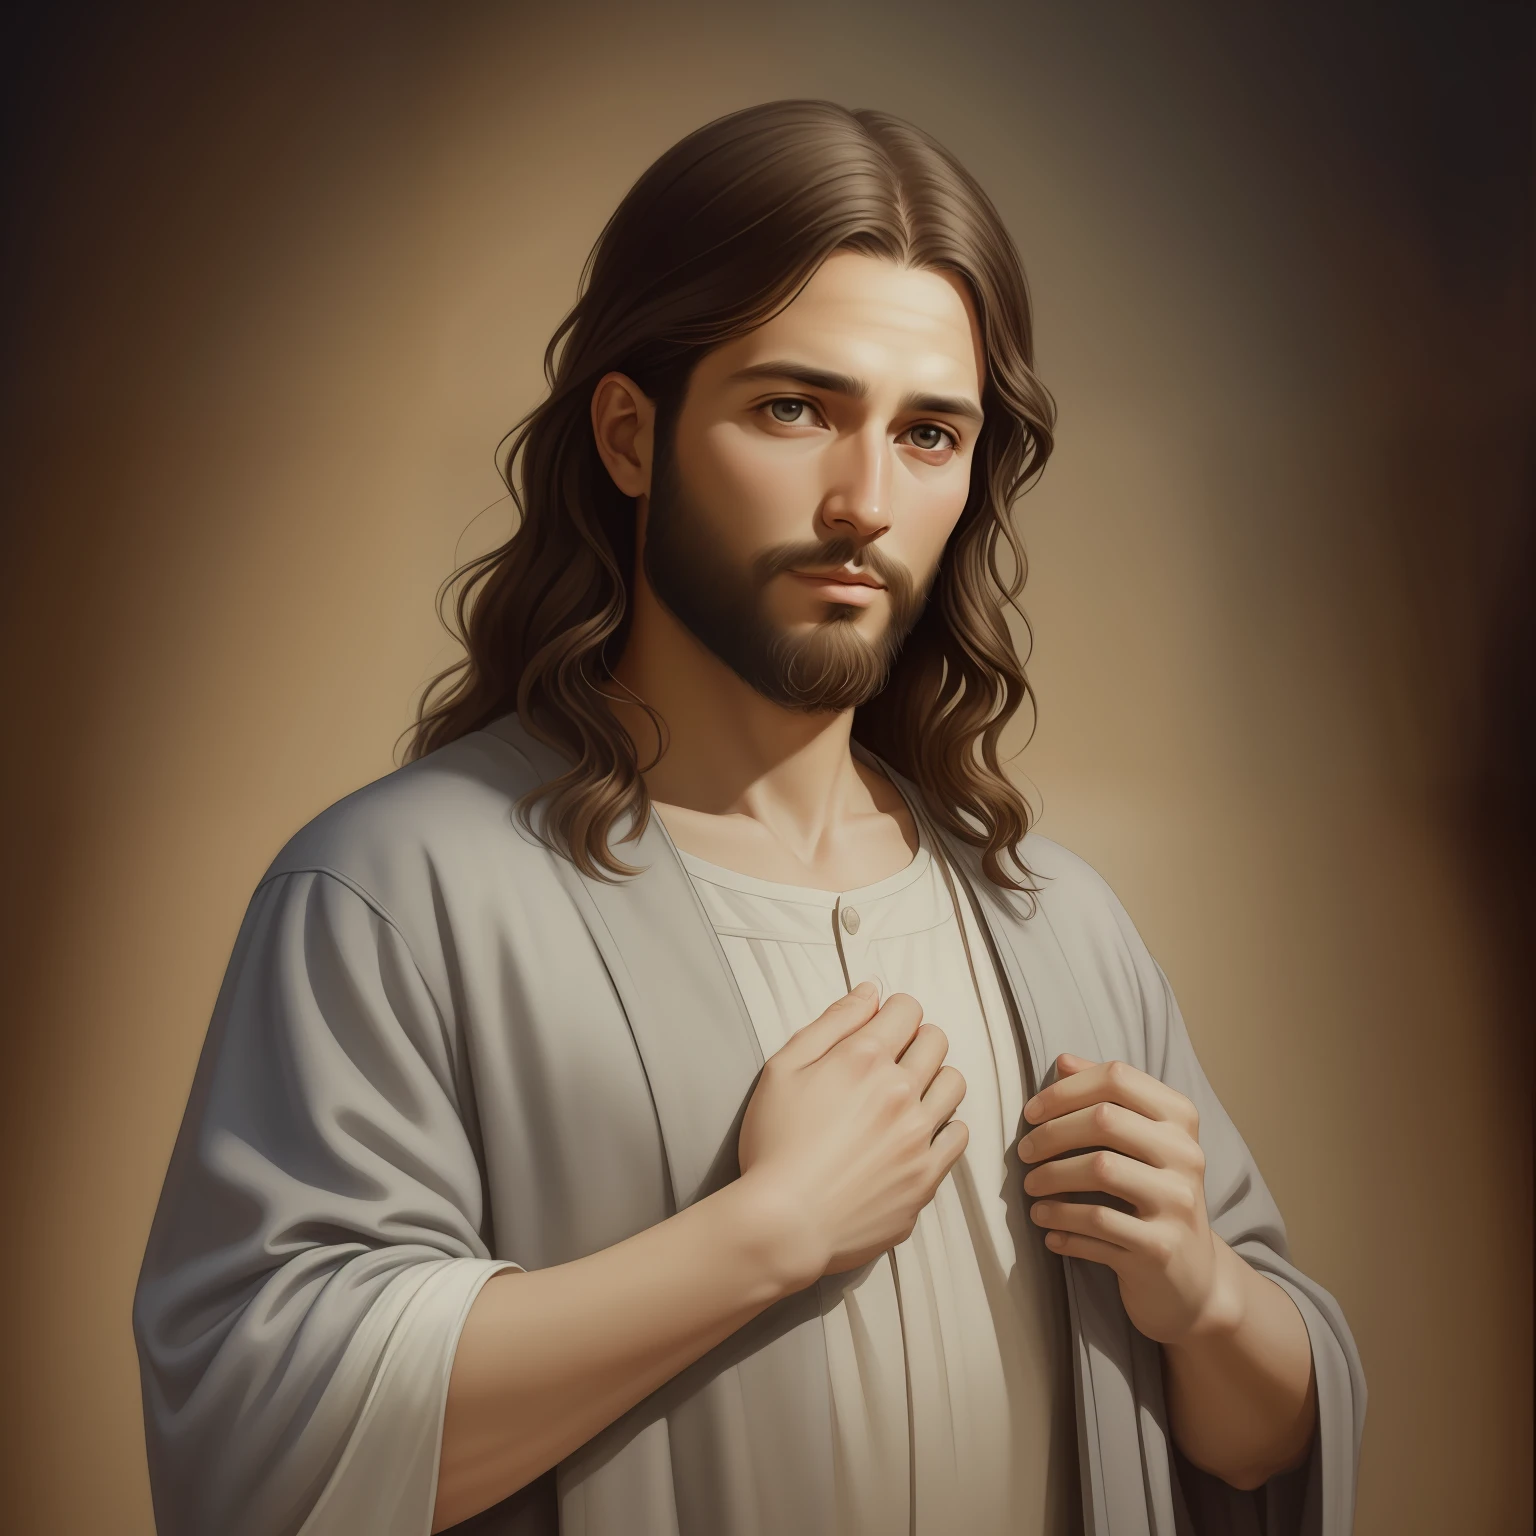 A beautiful ultra-thin 現実的 portrait of Jesus, 預言者, 男性 33歳 ヘブライ人 ブルネット, 短い茶色の髪, 長い茶色のひげ, 祝福の子供を手に, 胸元が閉じた長いリネンのチュニックを着ている, 正面から, 全身, 聖書の, 現実的,ディエゴ・ベラスケス,ピーテル・パウル・ルーベンス,レンブラント,アレックス・ロス,8k, コンセプトアート, Photo現実的, 現実的,  図, 油絵, シュルレアリスム, Hyper現実的, 祝福, デジタルアート, スタイル, 水彩